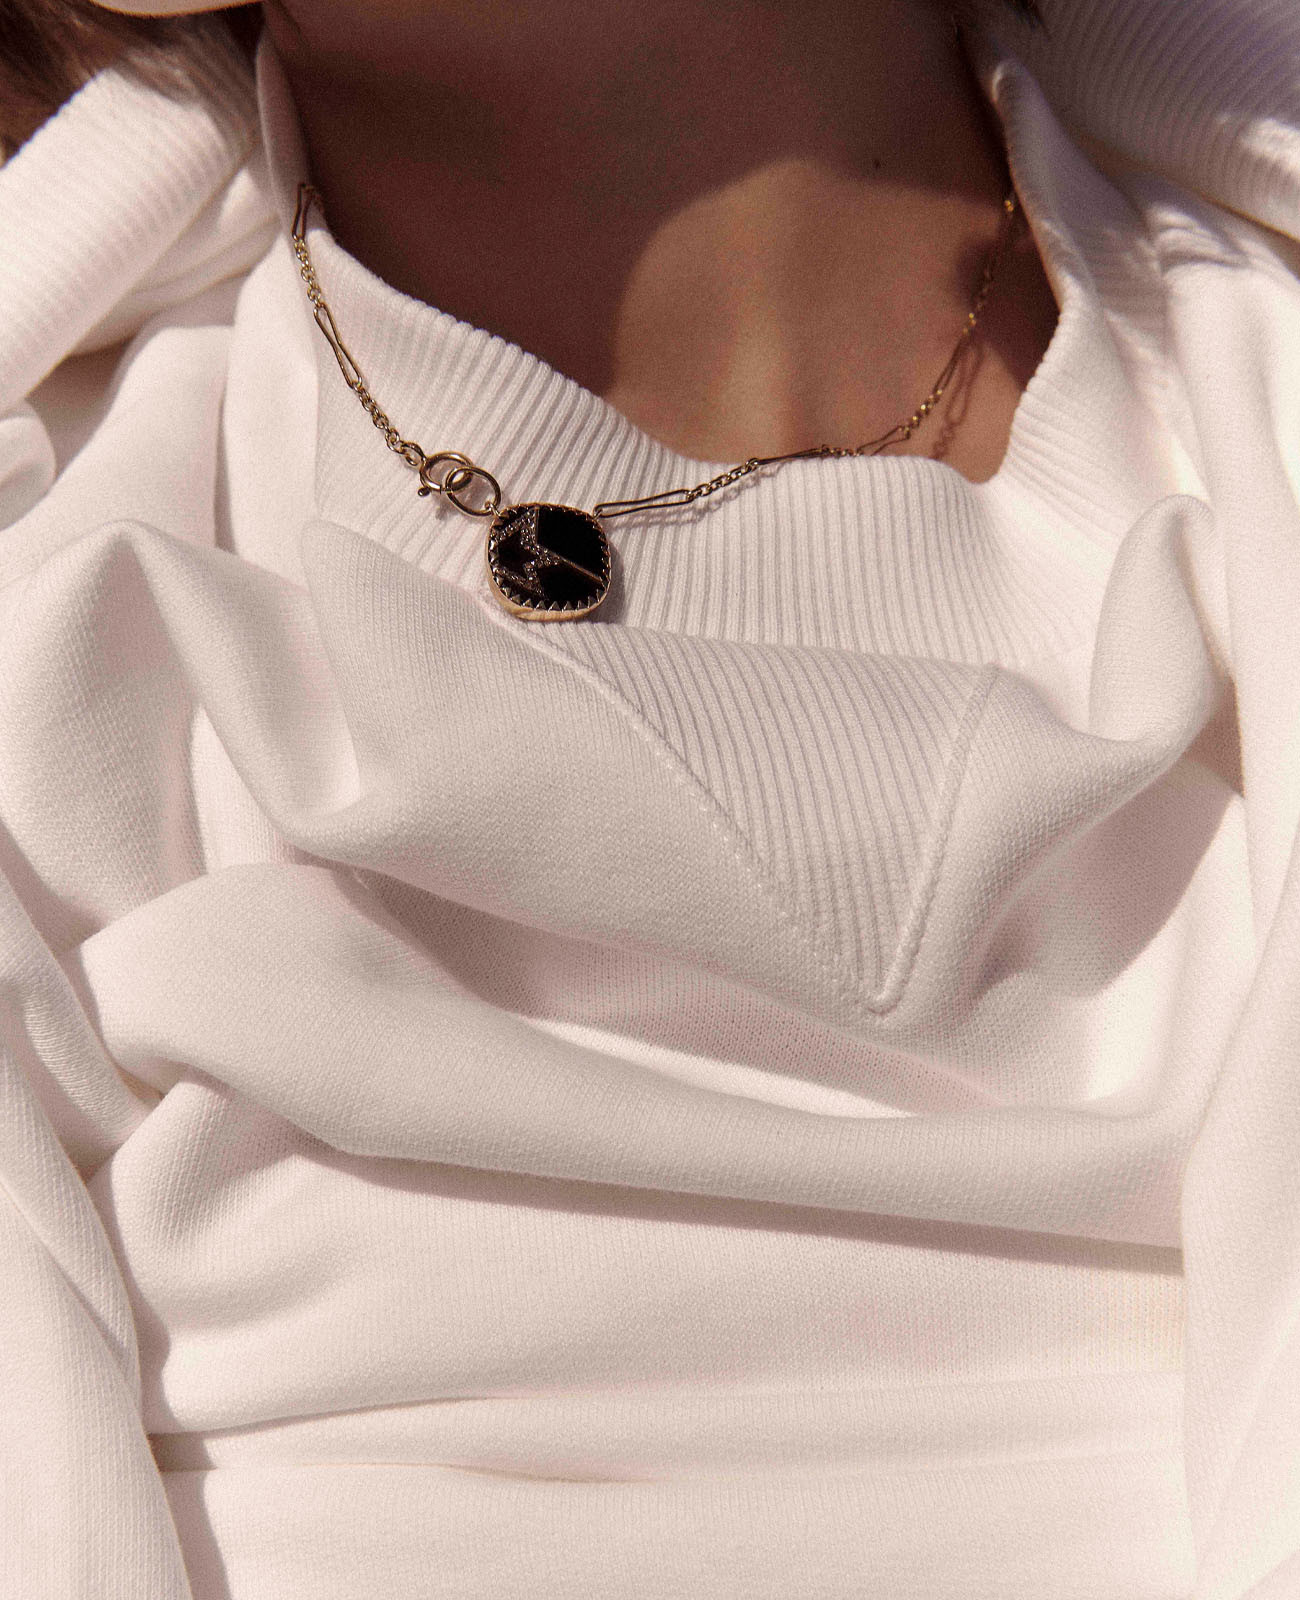 VARDA N°2 BLACK DIAMOND necklace pascale monvoisin jewelry paris